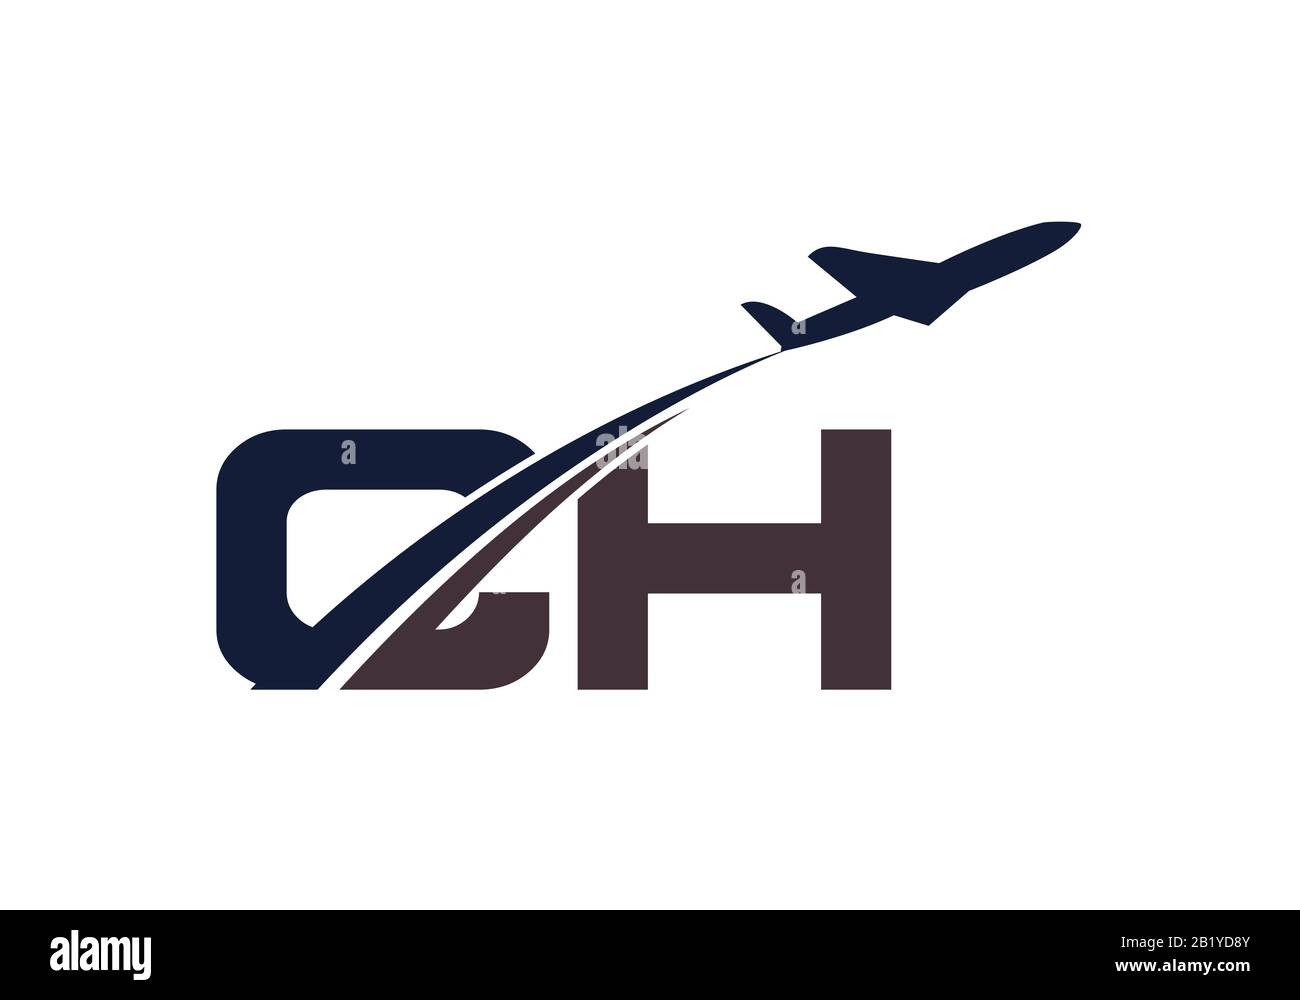 Lettera iniziale C e H con logo Aviation, modello Air, Airline, Airplane e Travel Logo. Illustrazione Vettoriale